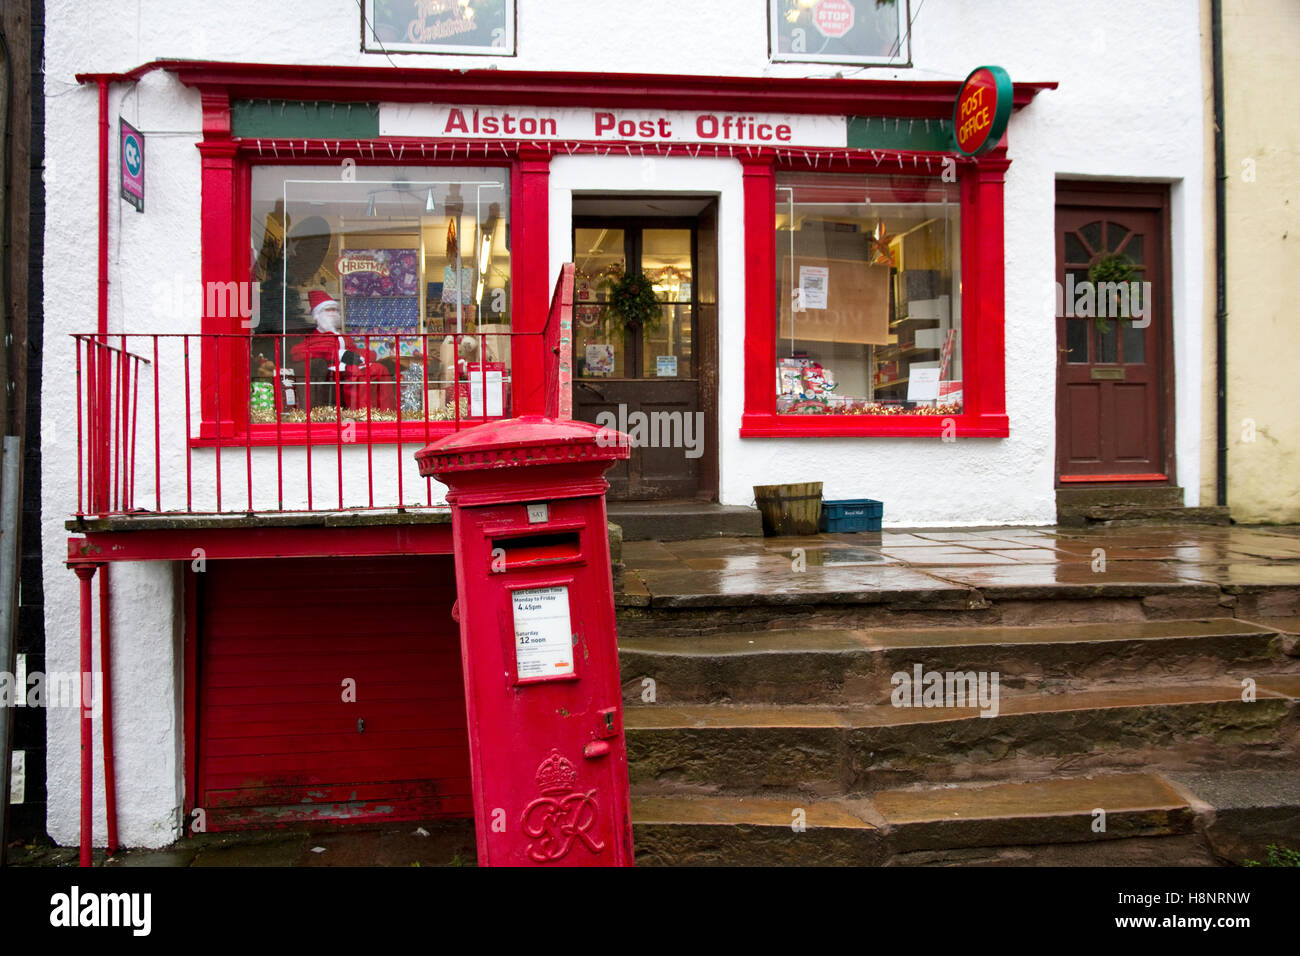 Post Office, Alston Stock Photo